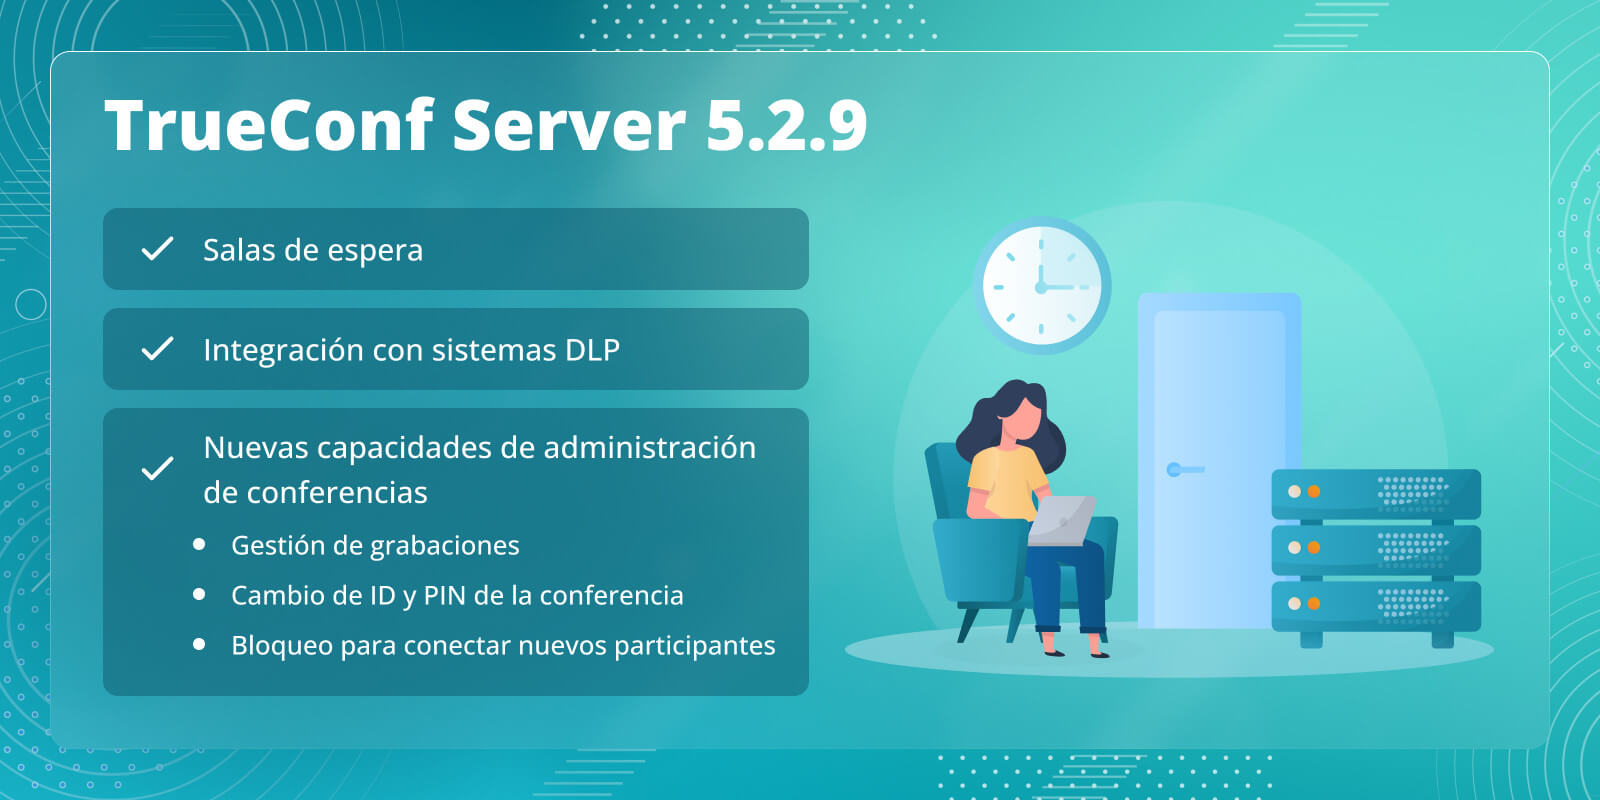 TrueConf Server 5.2.9: Salas de espera, integración con sistemas DLP y nuevas capacidades de administración de reuniones en tiempo real 6